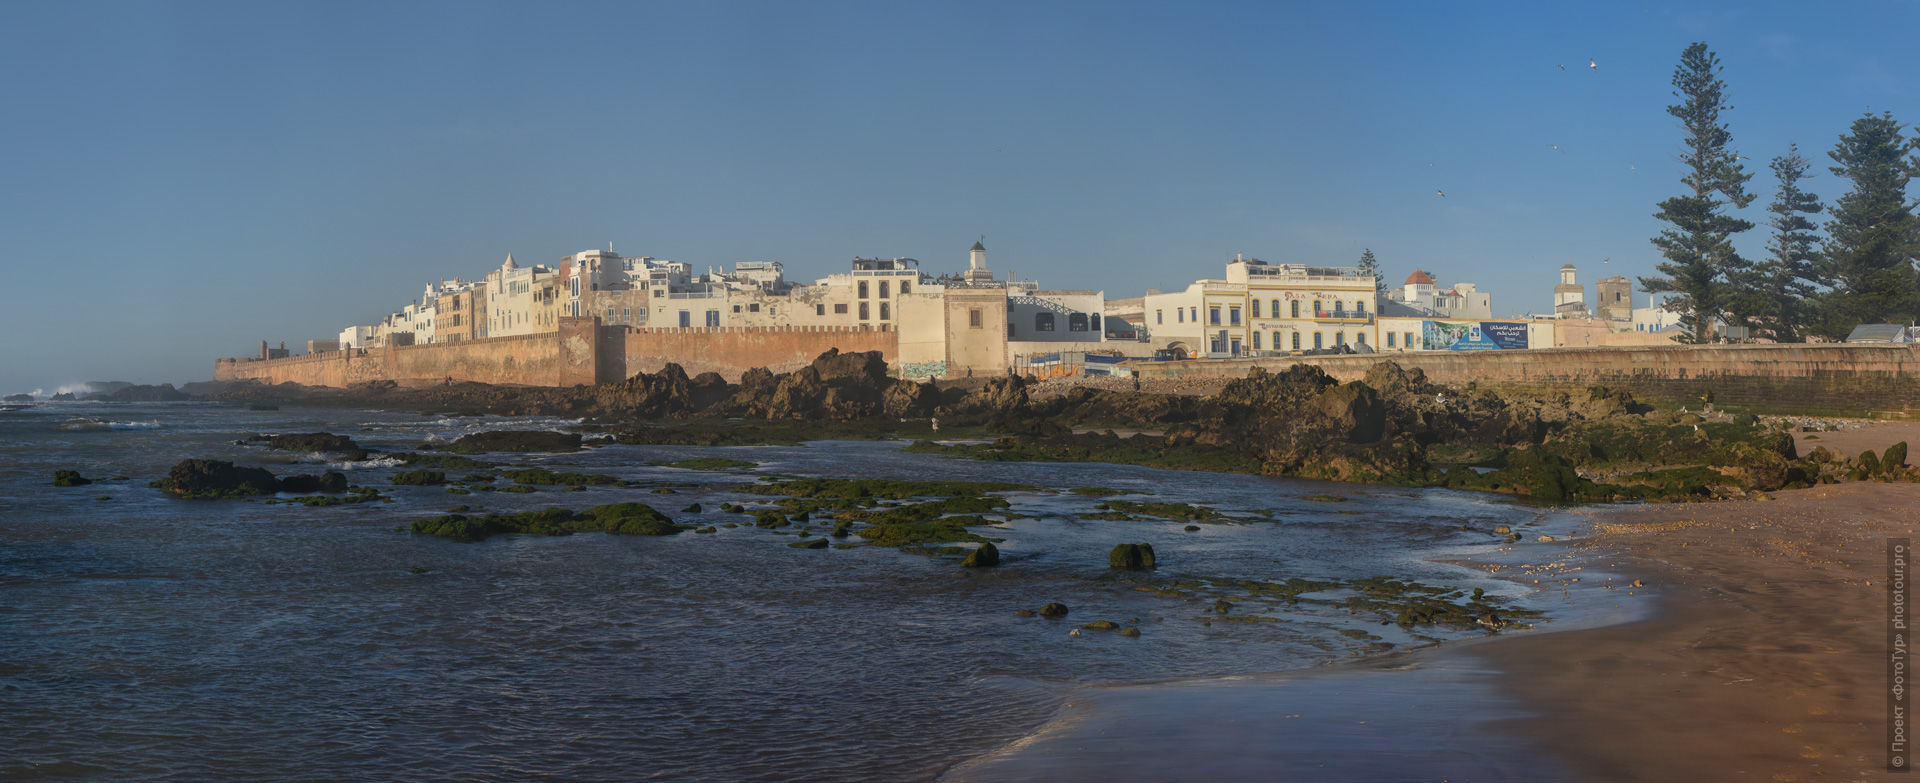 Крепость порта Эс-Сувейра. Фототур в Марокко: медины и порты Марокко, 7 ноября - 18 ноября 2021 года.